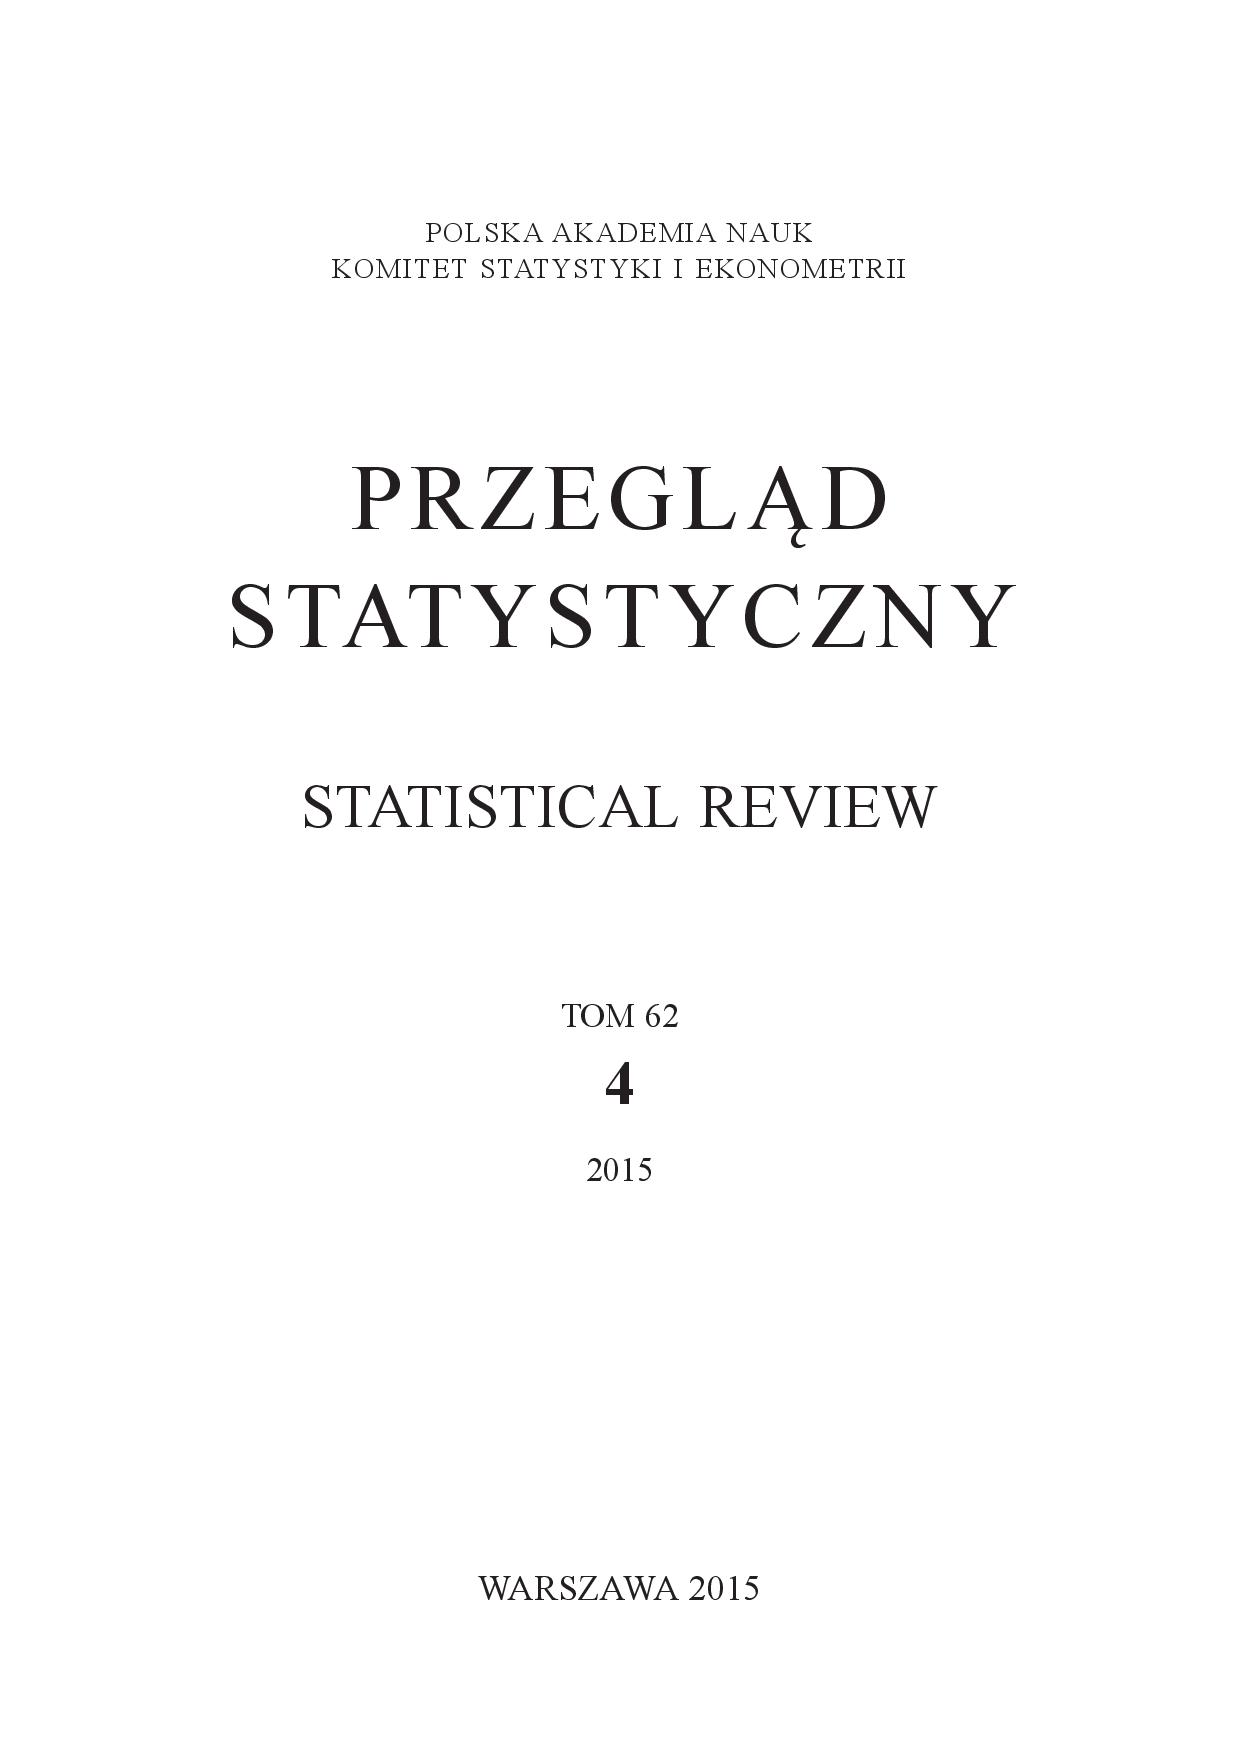 Sztywna vs. elastyczna strategia bezpośredniego celu inflacyjnego w modelu optymalnej polityki pieniężnej dla Polski